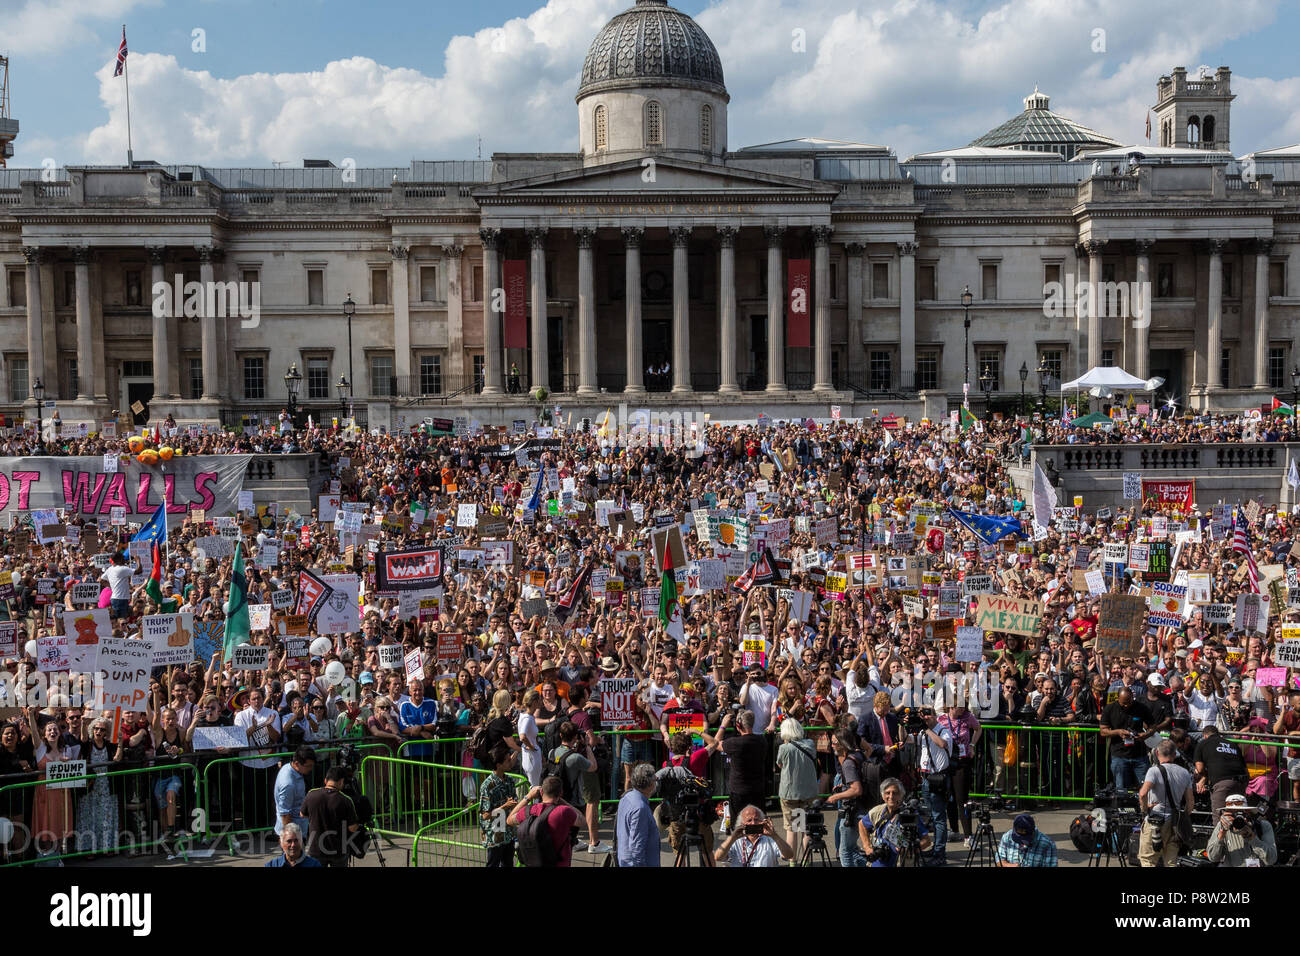 London, 13. Juli 2018: die Leute auf dem Trafalgar Square gegen den amerikanischen Präsidenten zu protestieren, Donald Trump Besuch in Großbritannien. Die Demonstration versammelten sich etwa 250 Tausend Menschen, die größte Zahl seit mehr als einem Jahrzehnt. Der März war eine Gelegenheit viele soziale Bedenken zu äußern. Quelle: Michal Busko/Alamy leben Nachrichten Stockfoto